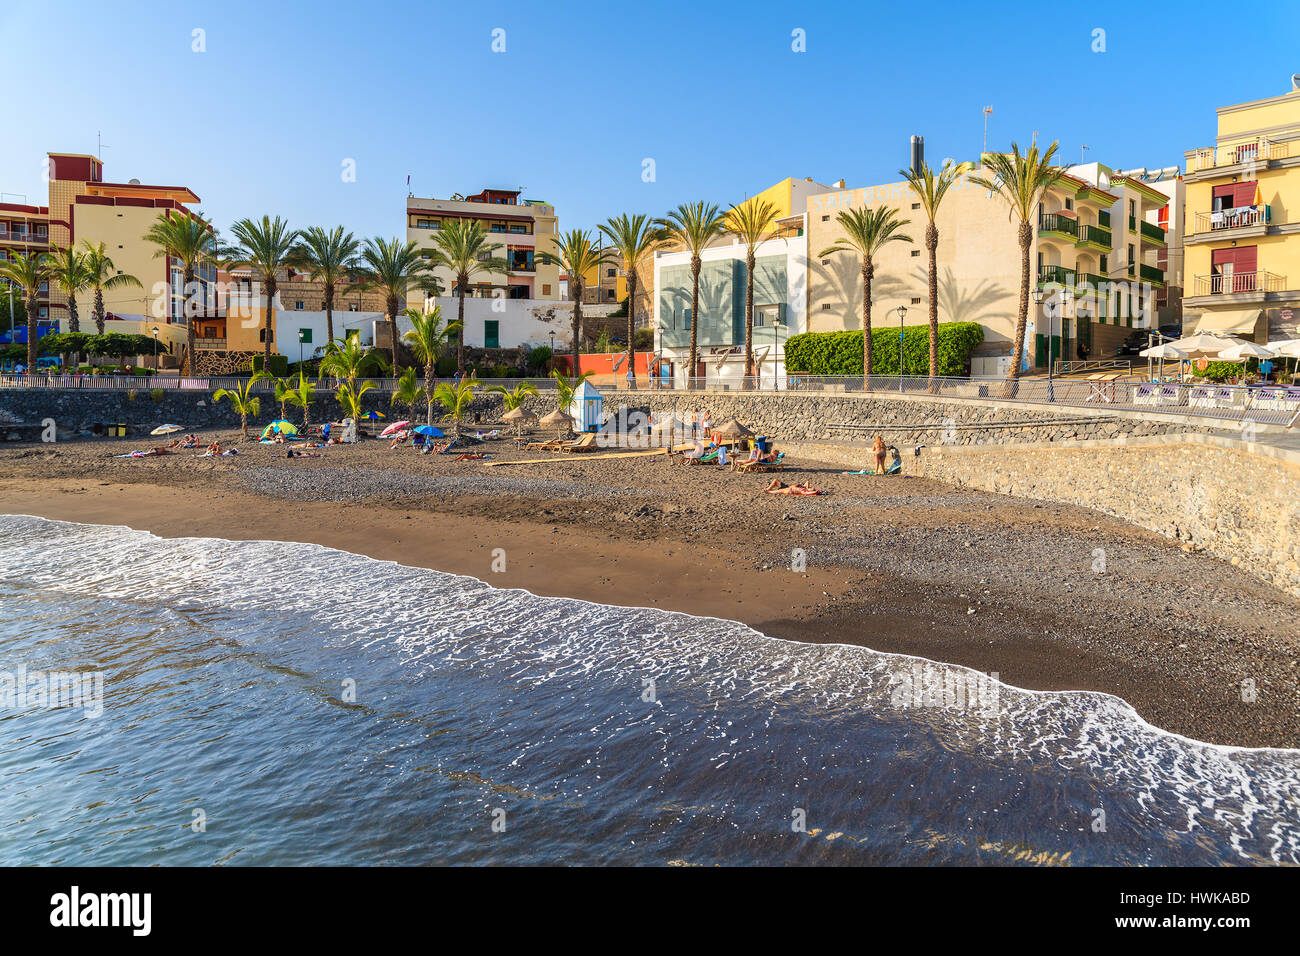 La playa de San Juan, la isla de Tenerife - Nov 15, 2015: La ola del océano y hermosa playa en la localidad costera de San Juan, la isla de Tenerife, España. Foto de stock